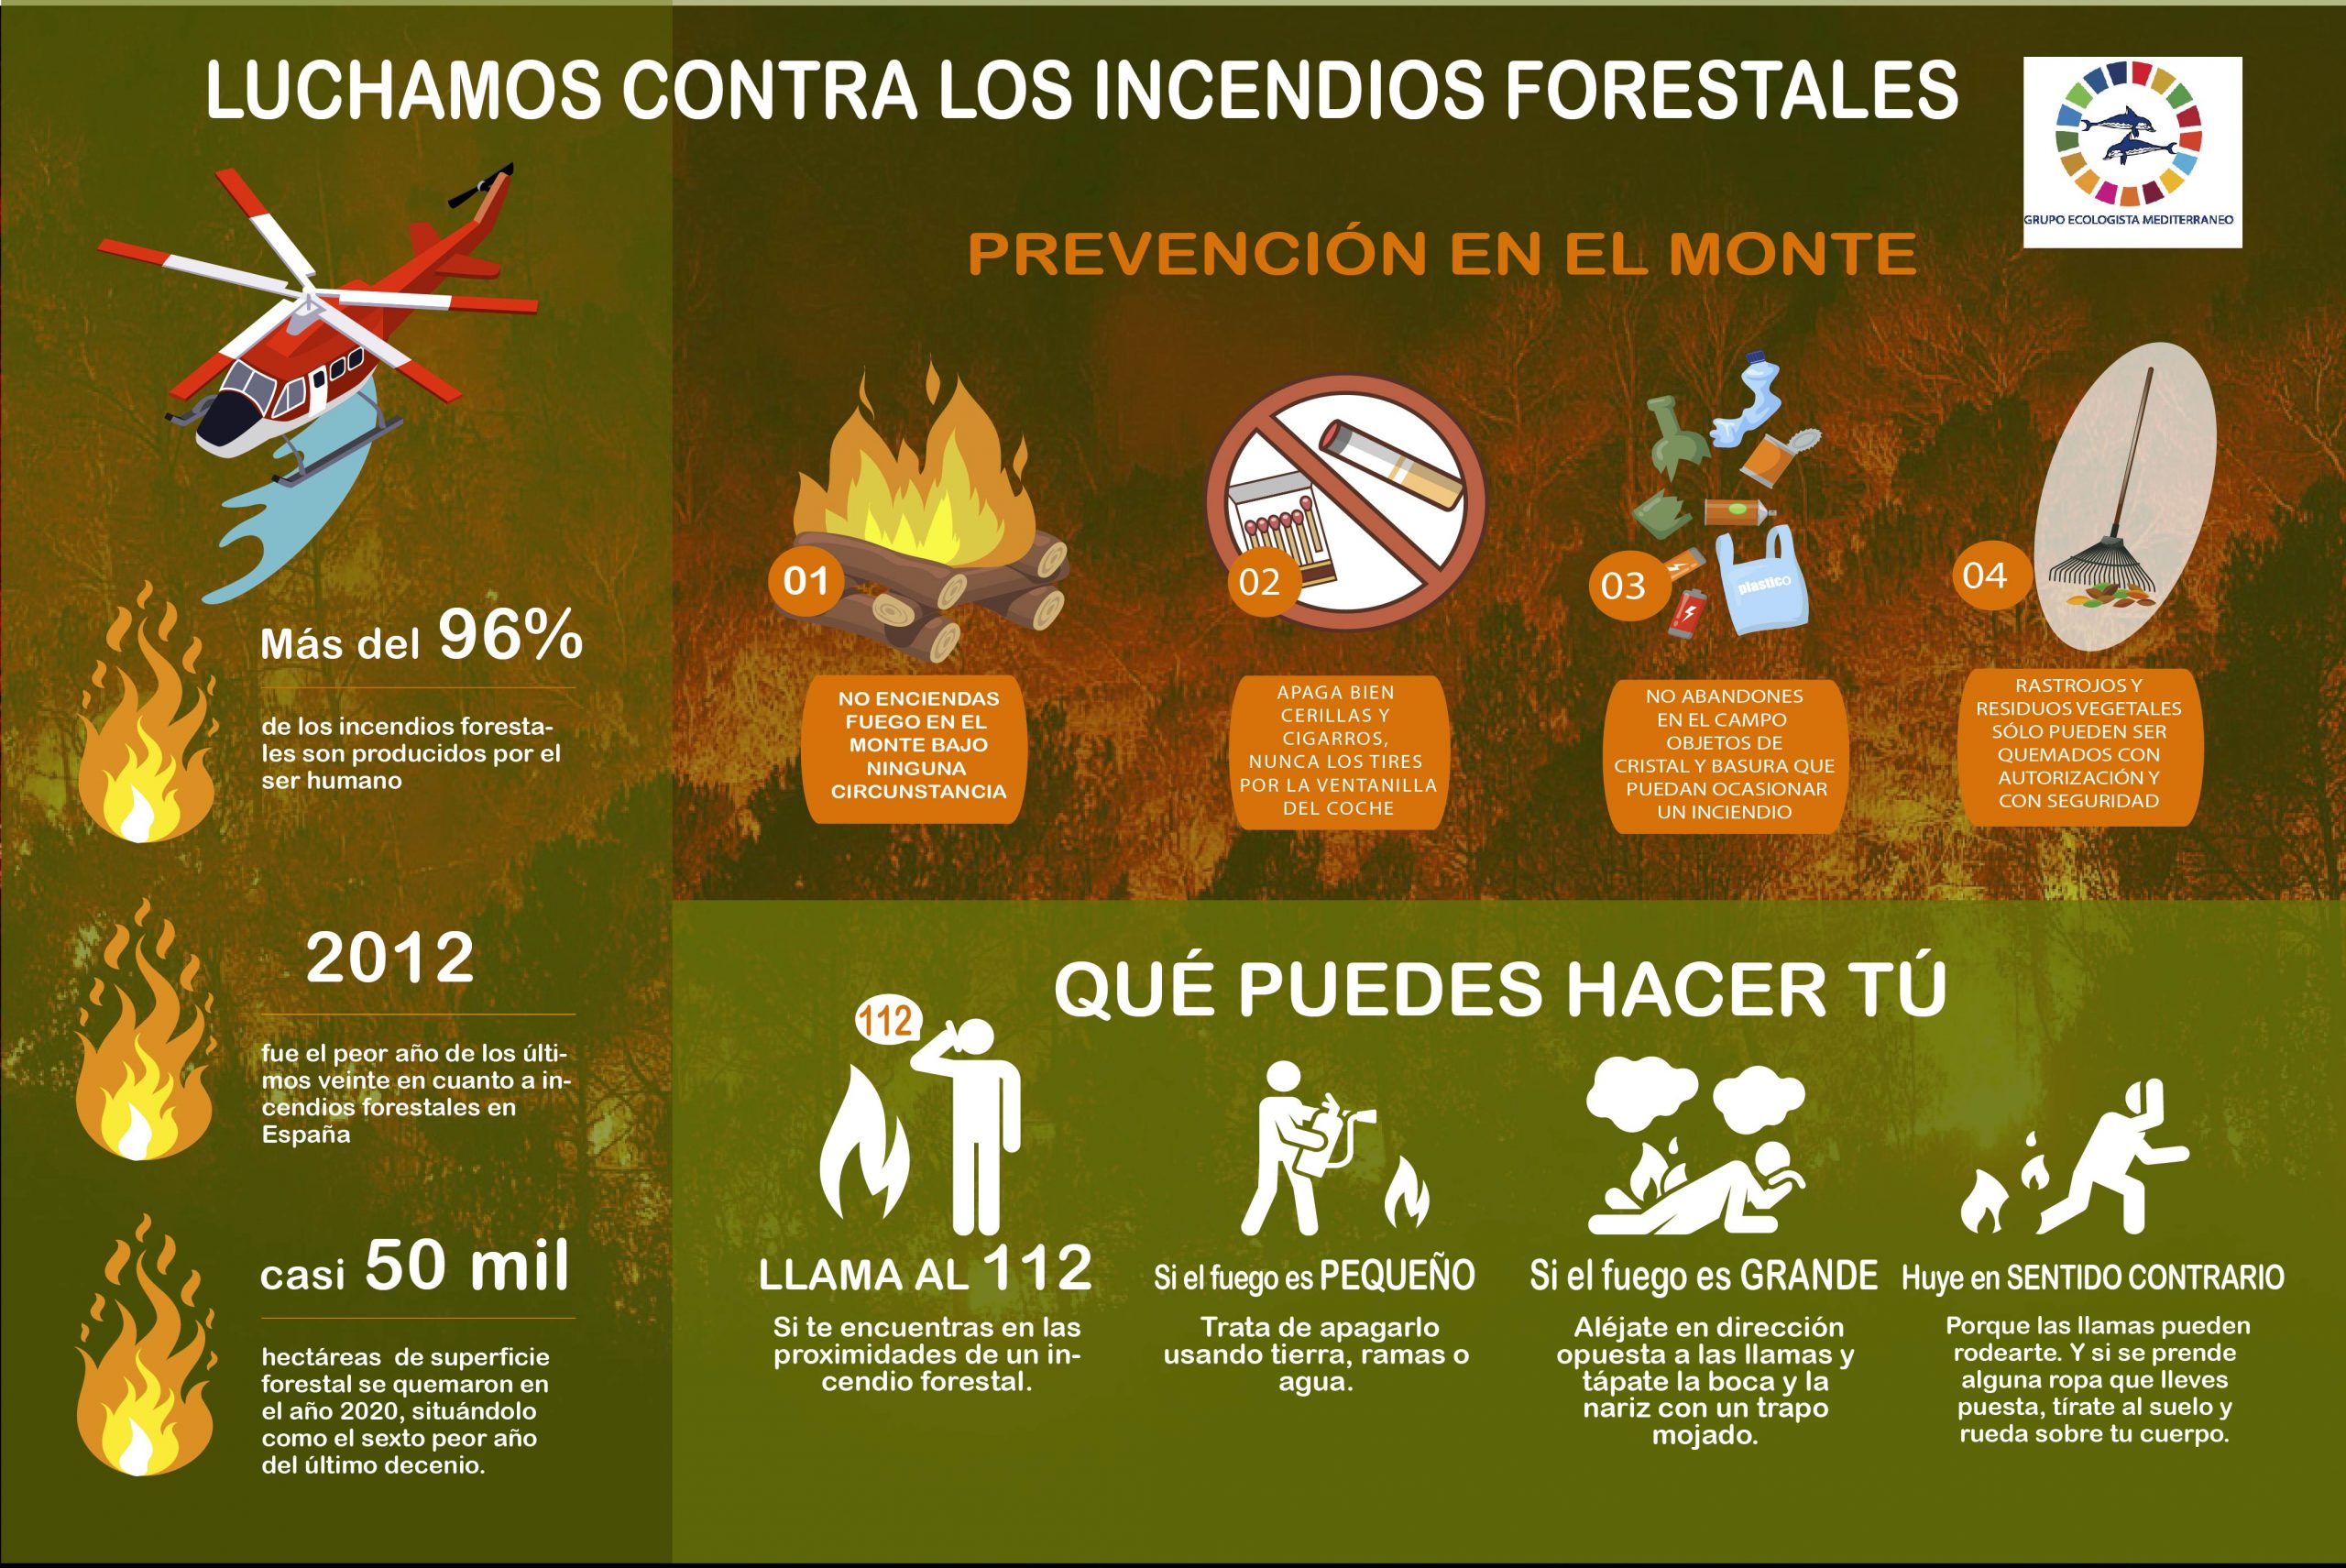 Capaña contra incendios forestales